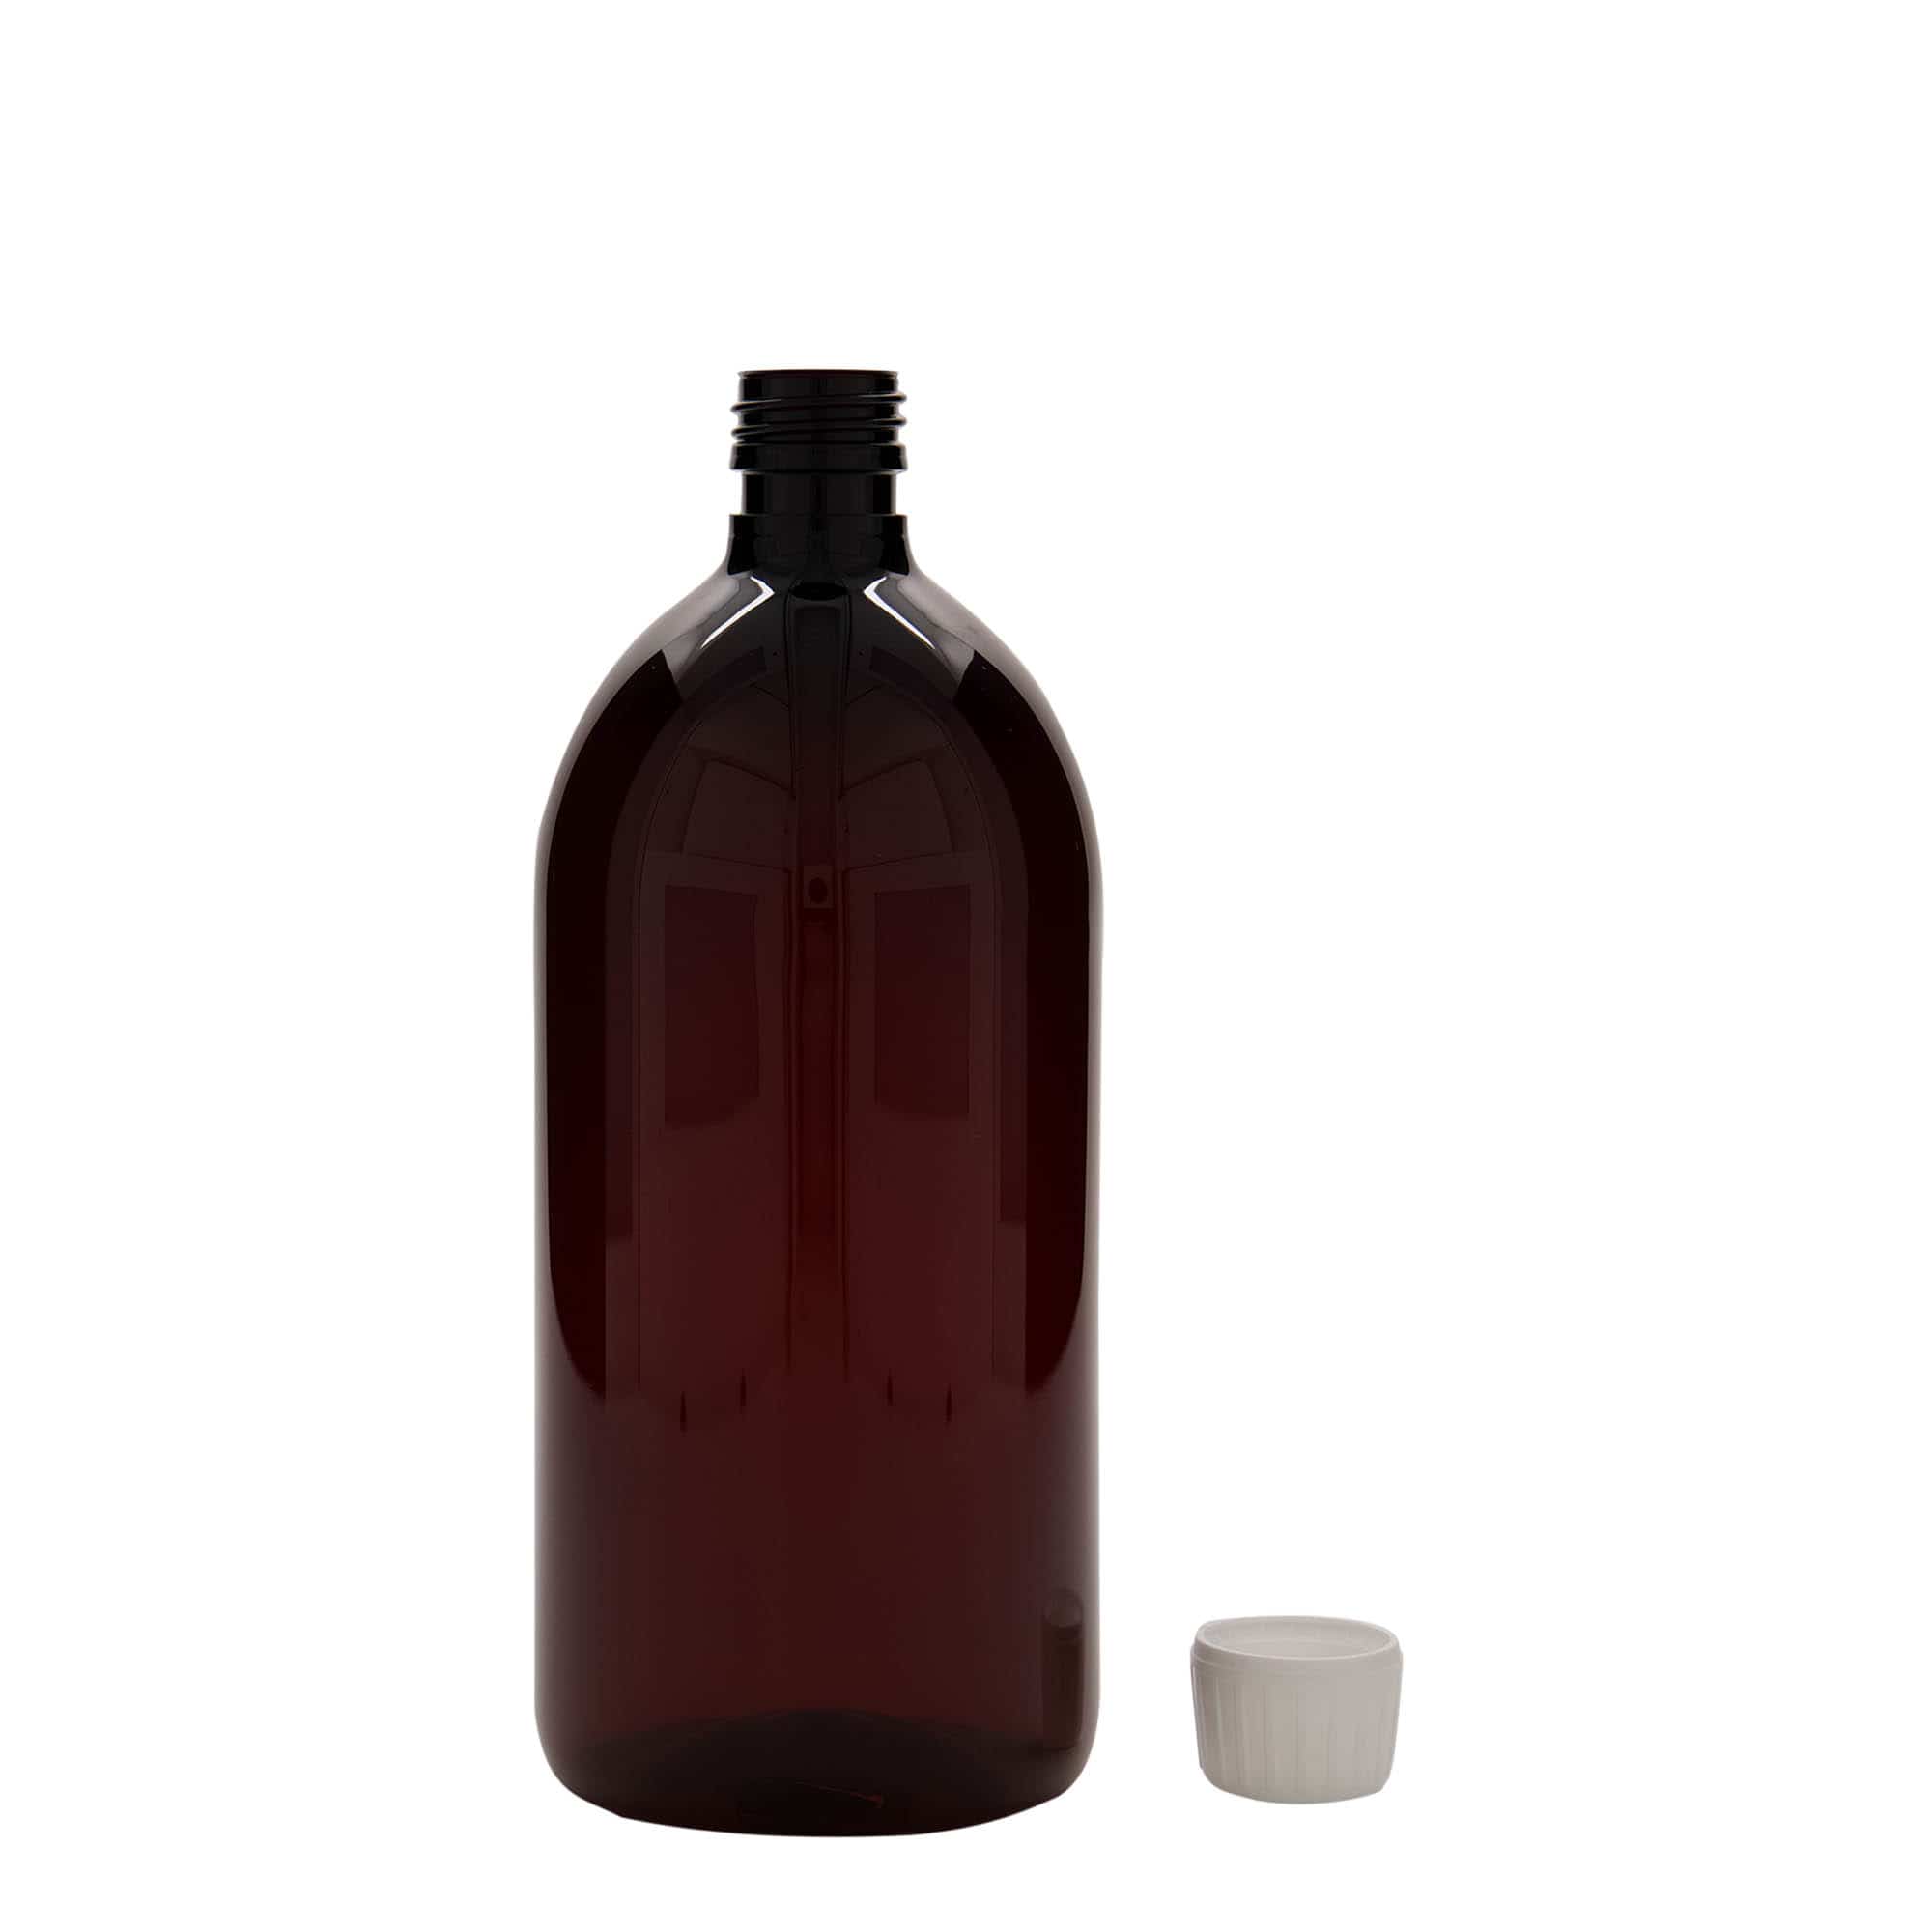 Flacon pharmaceutique en PET 1 000 ml, brun, plastique, bouchage: PP 28